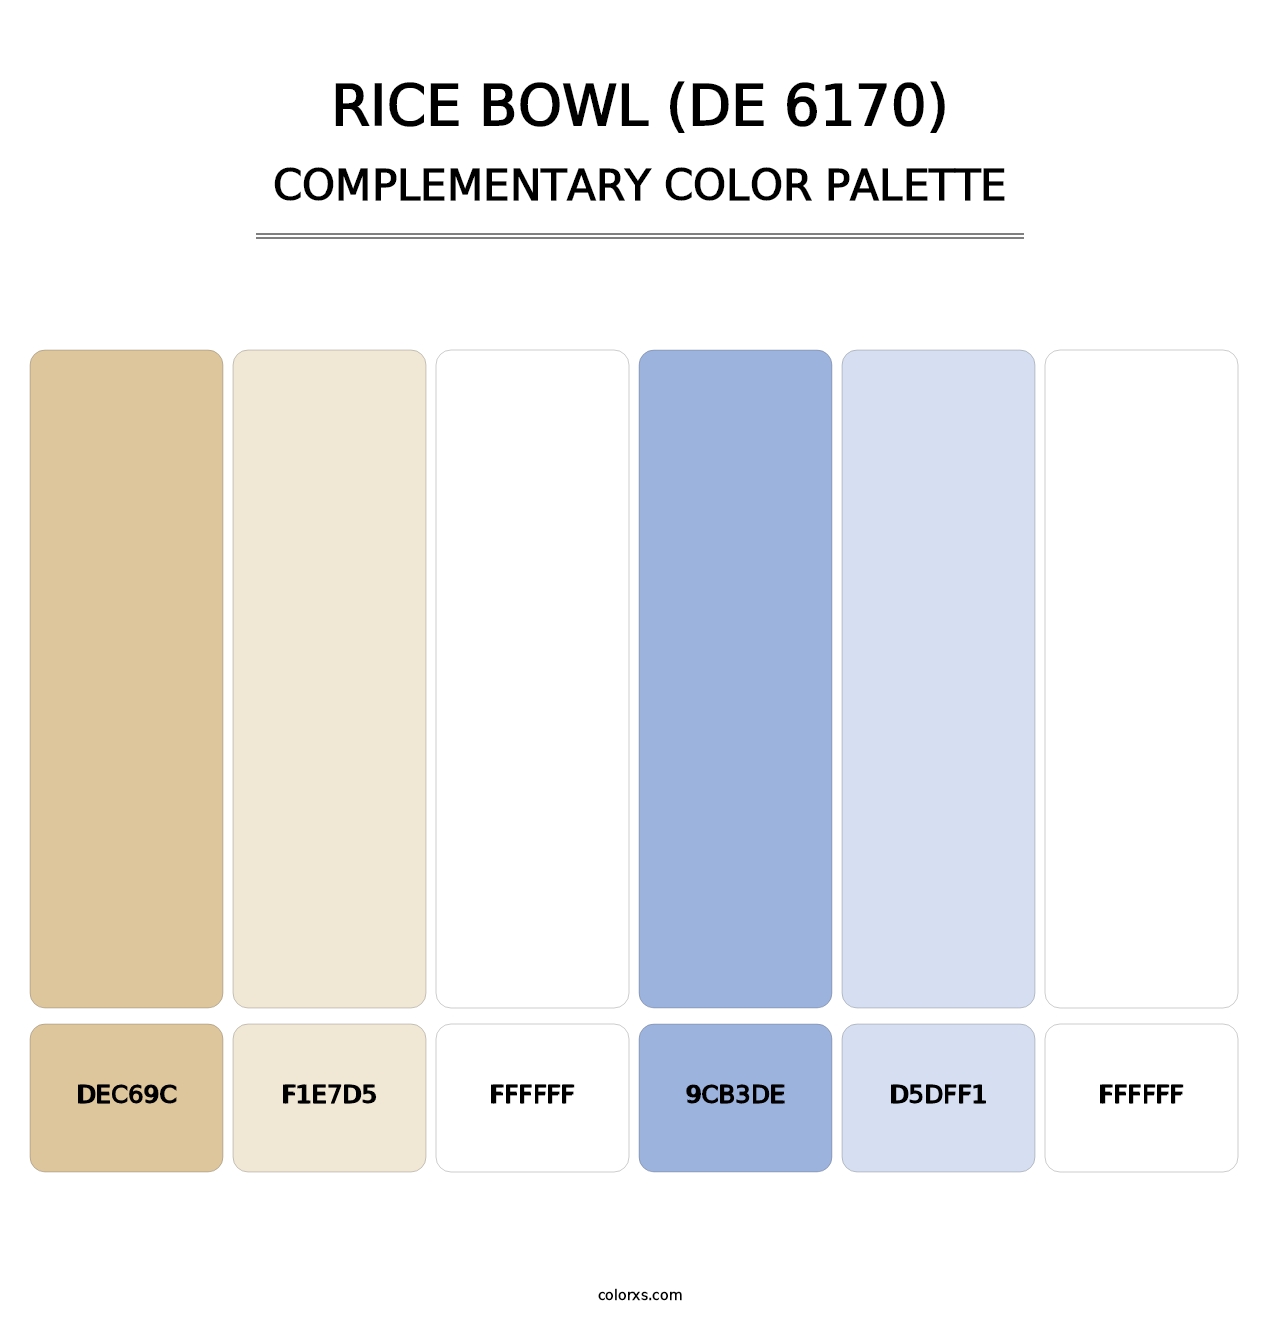 Rice Bowl (DE 6170) - Complementary Color Palette